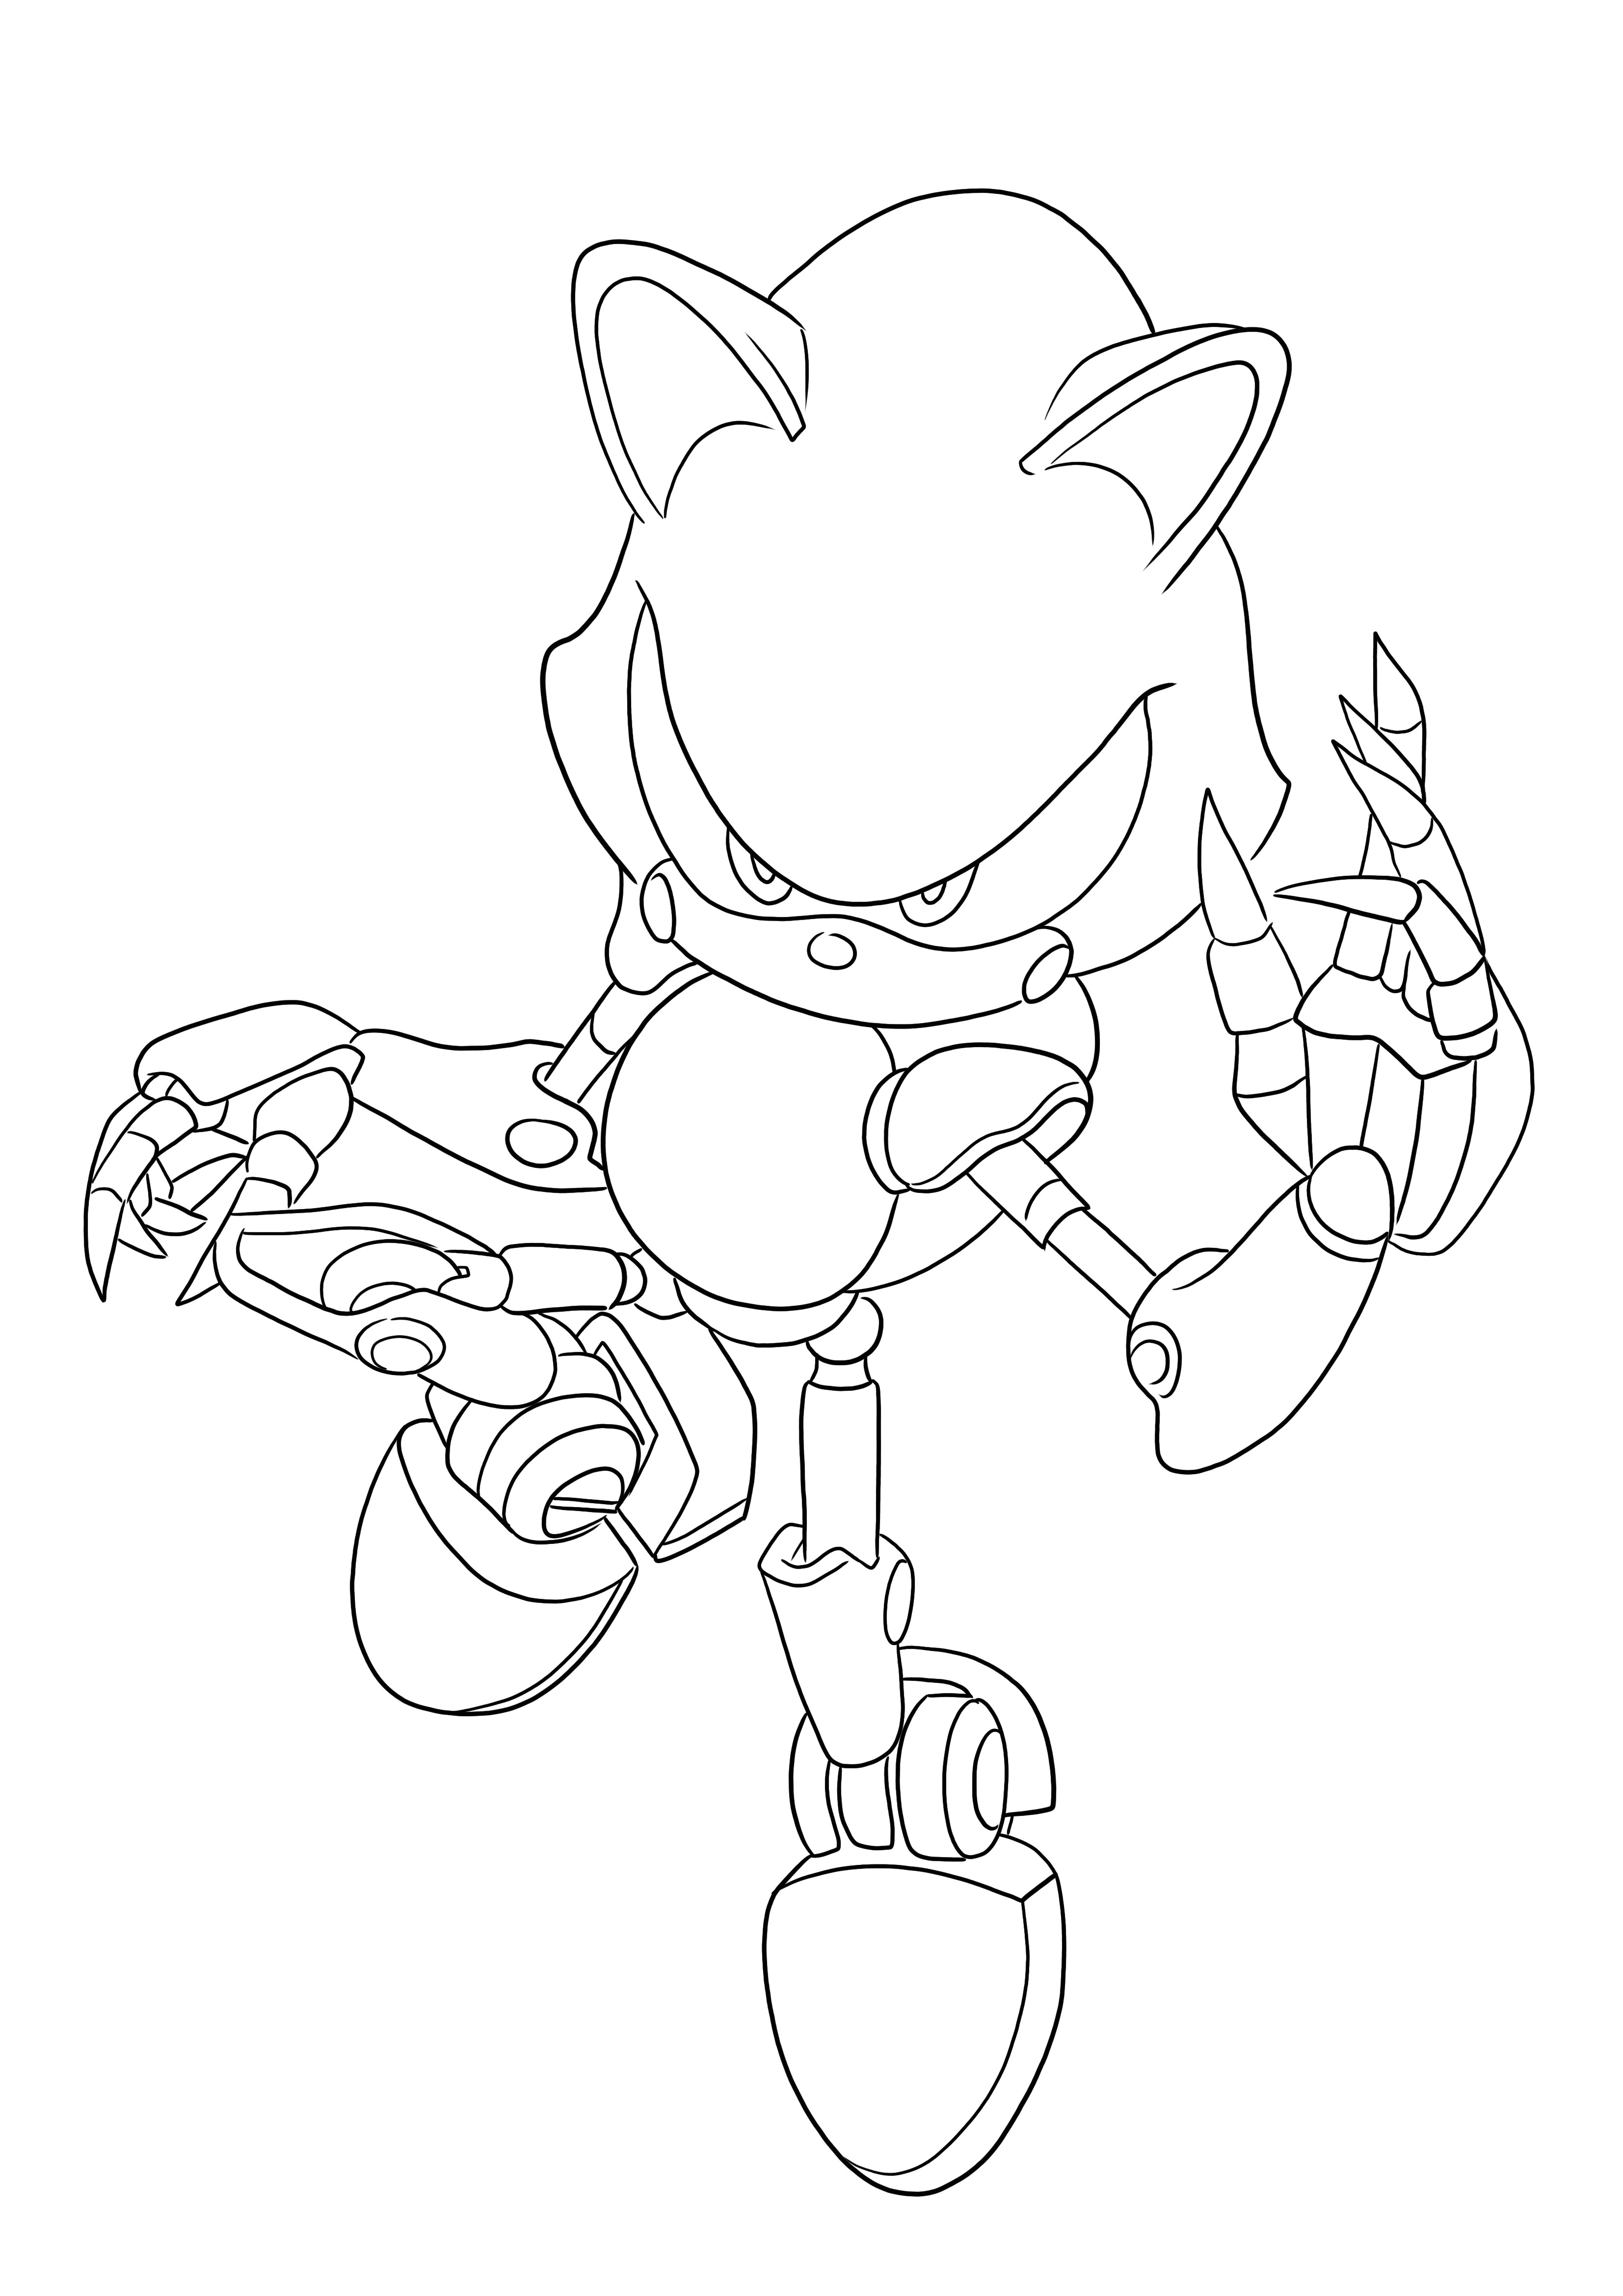 Metal Sonic można bezpłatnie pobrać lub wydrukować i łatwo pokolorować